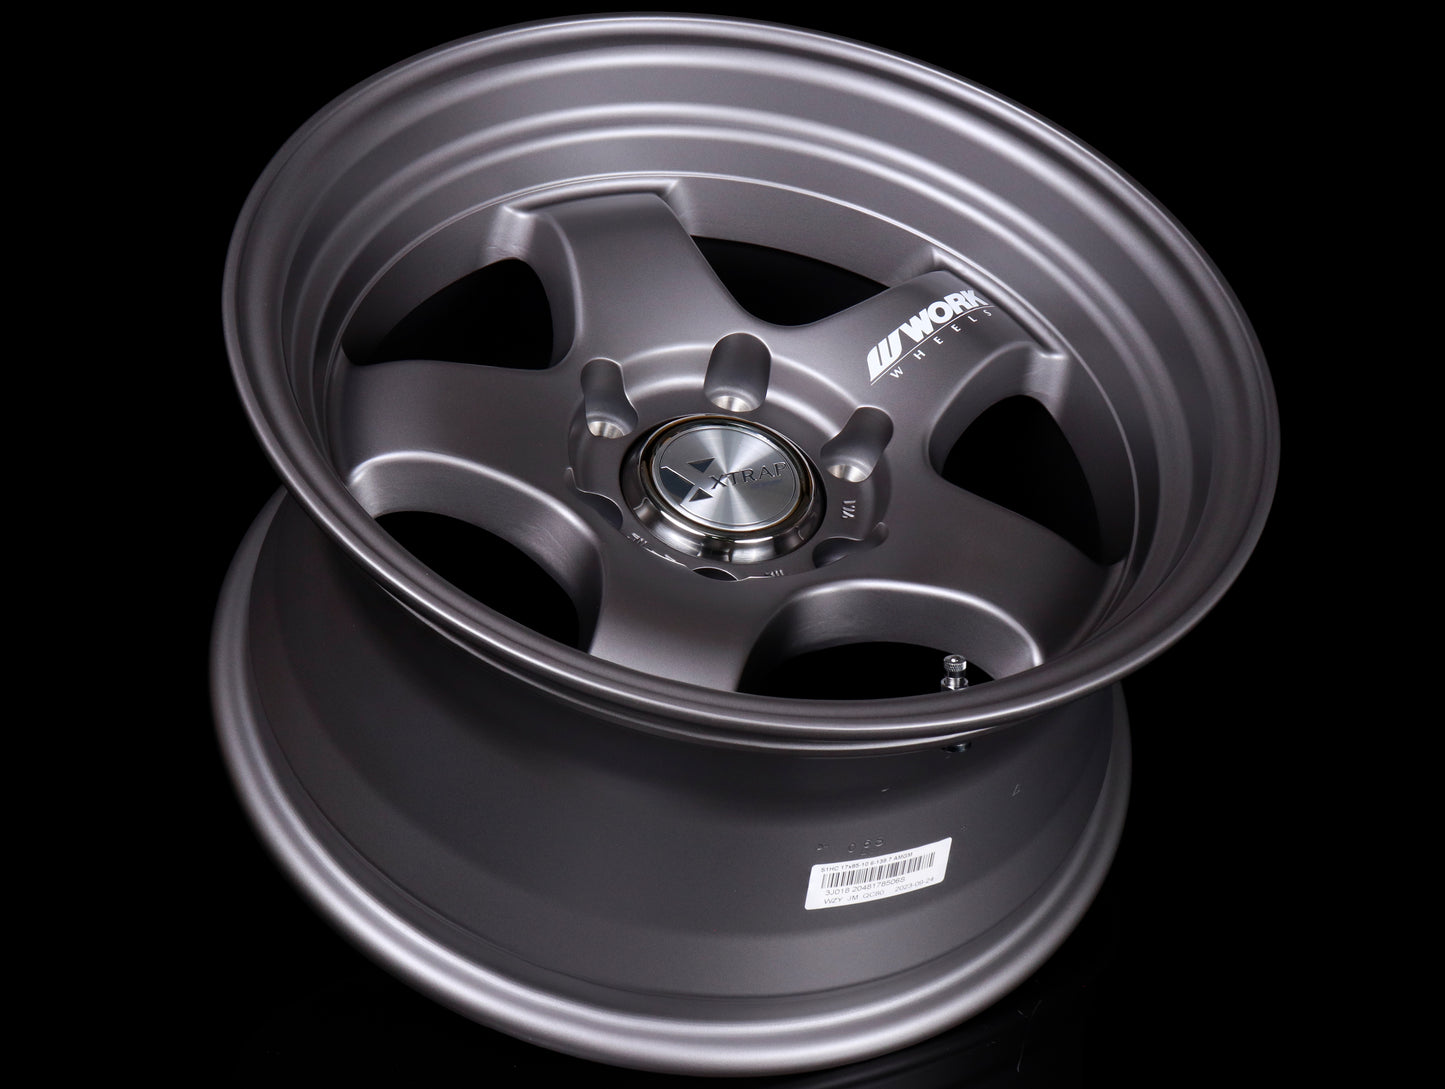 Work XTRAP S1HC Wheels - Matte Gunmetal - 17x8.5 / -10 / 6x139.7